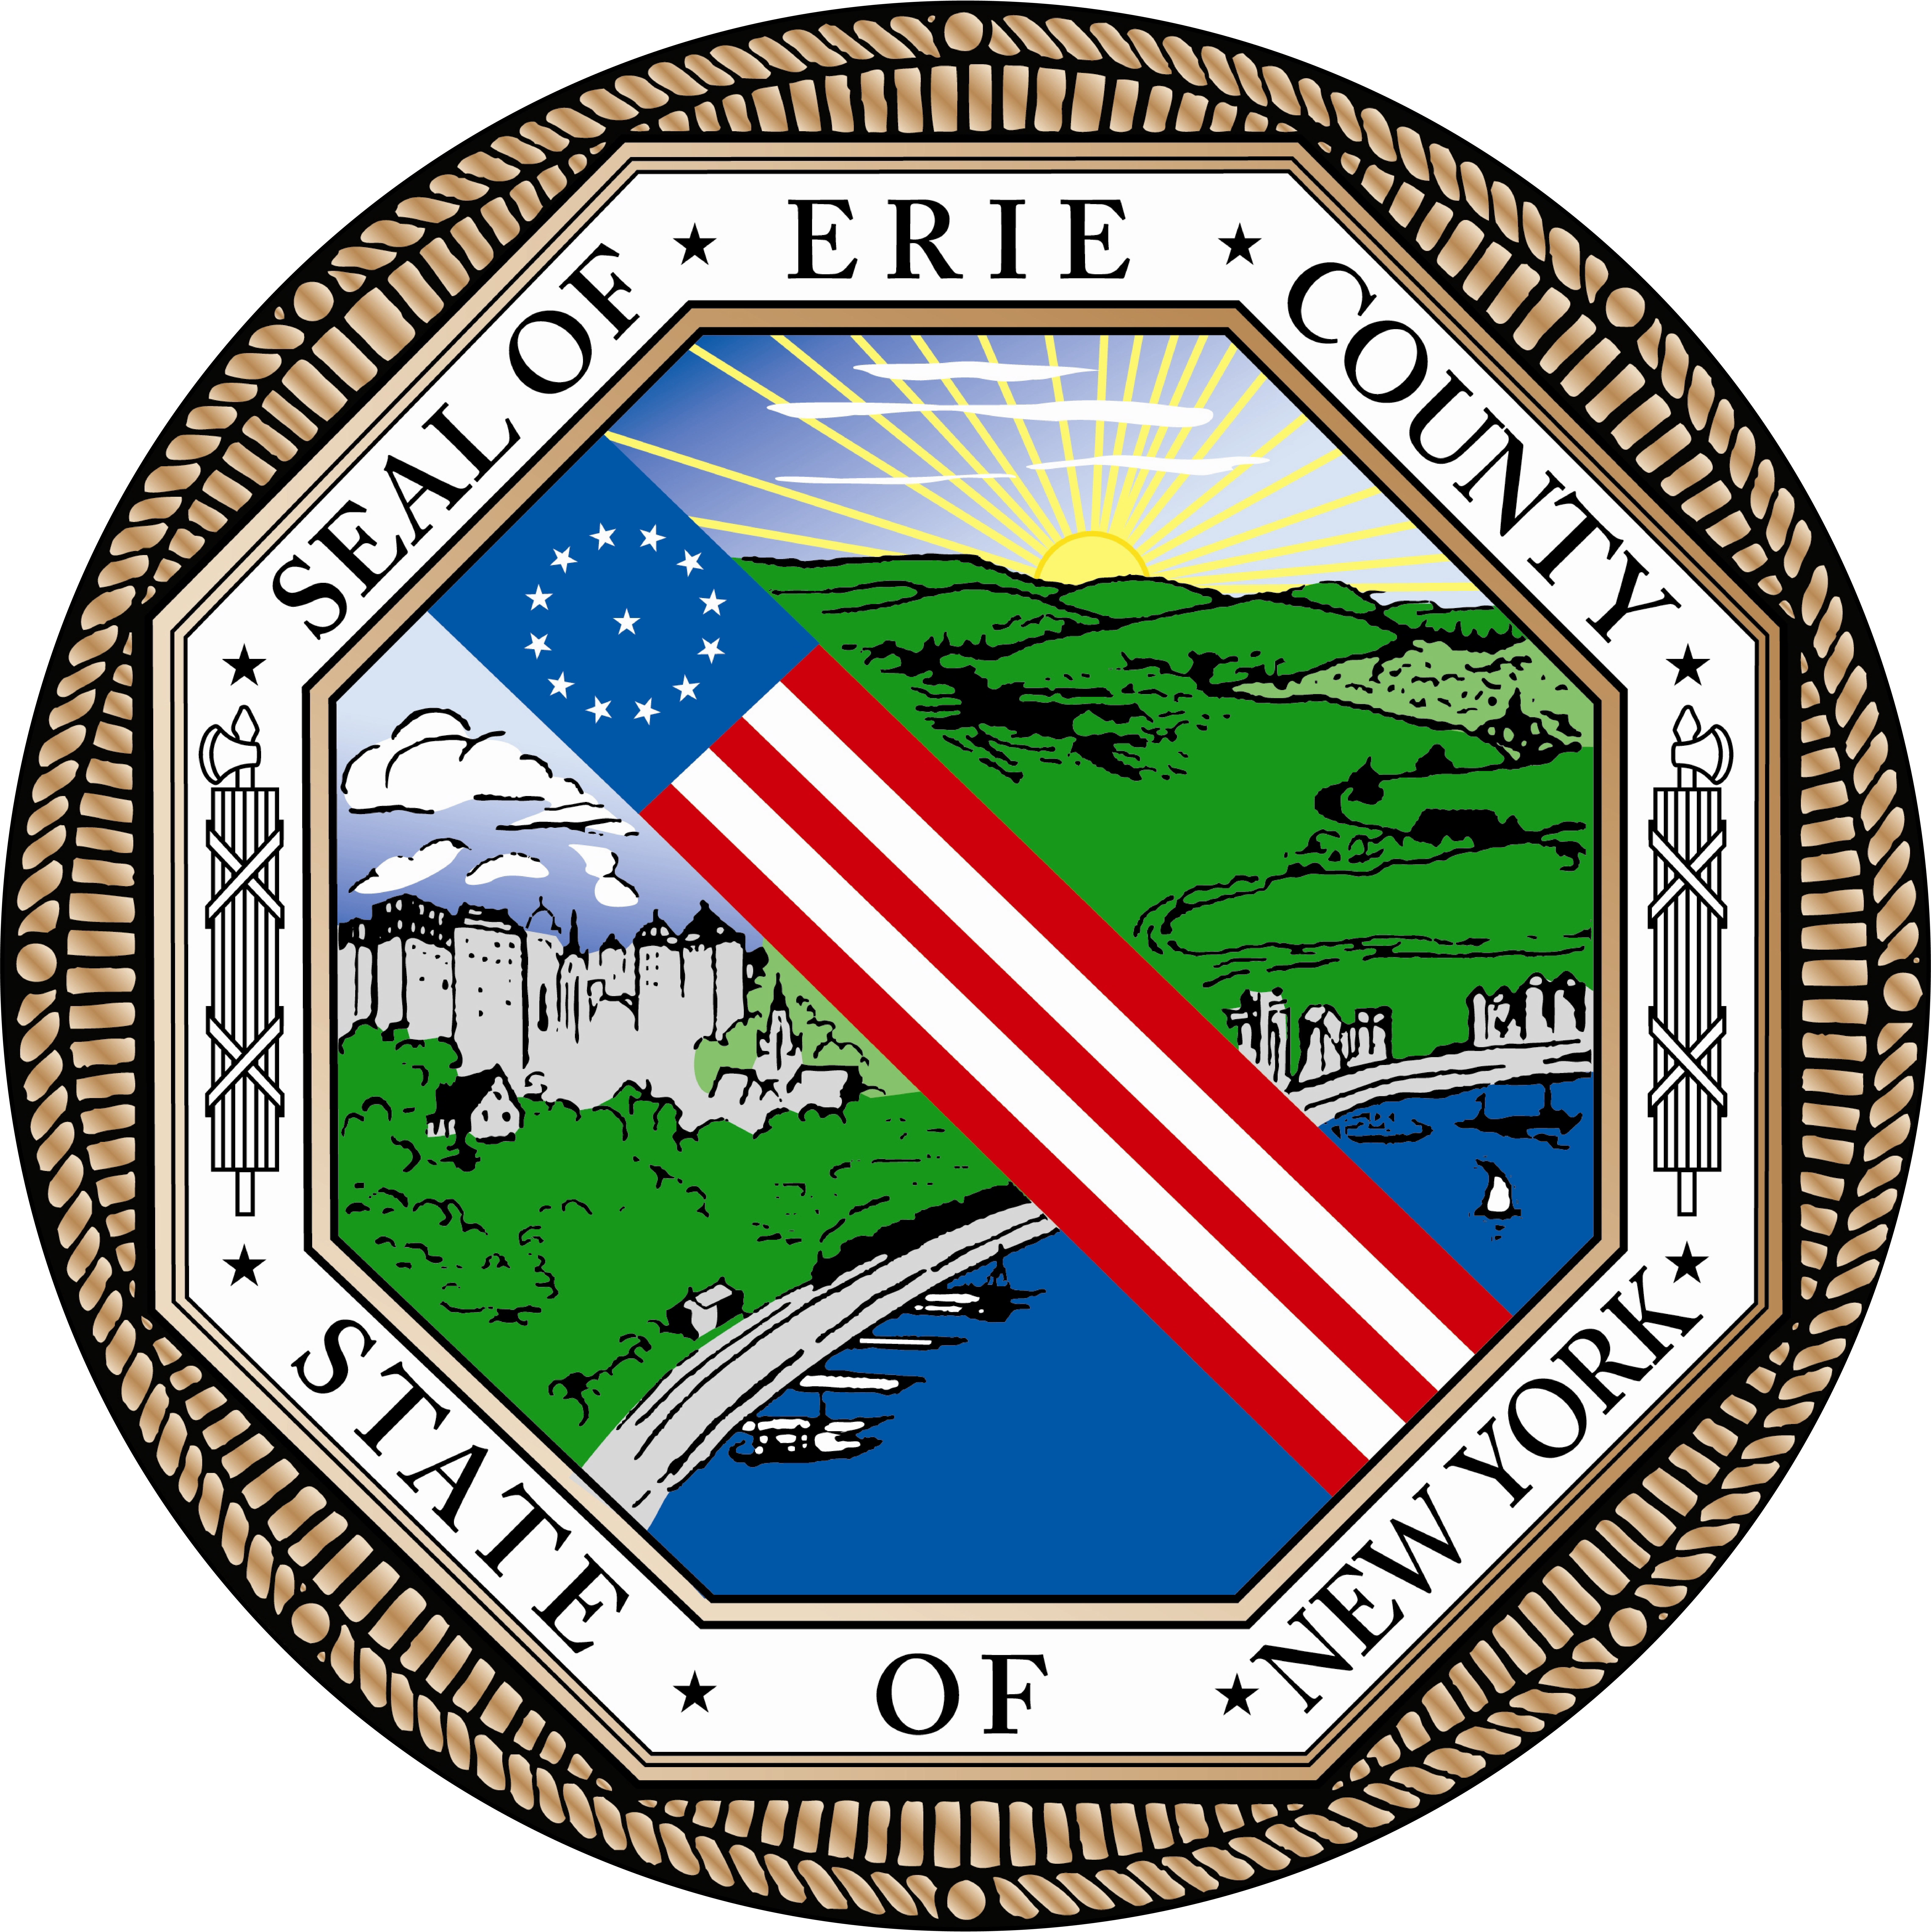 Erie county seal logo